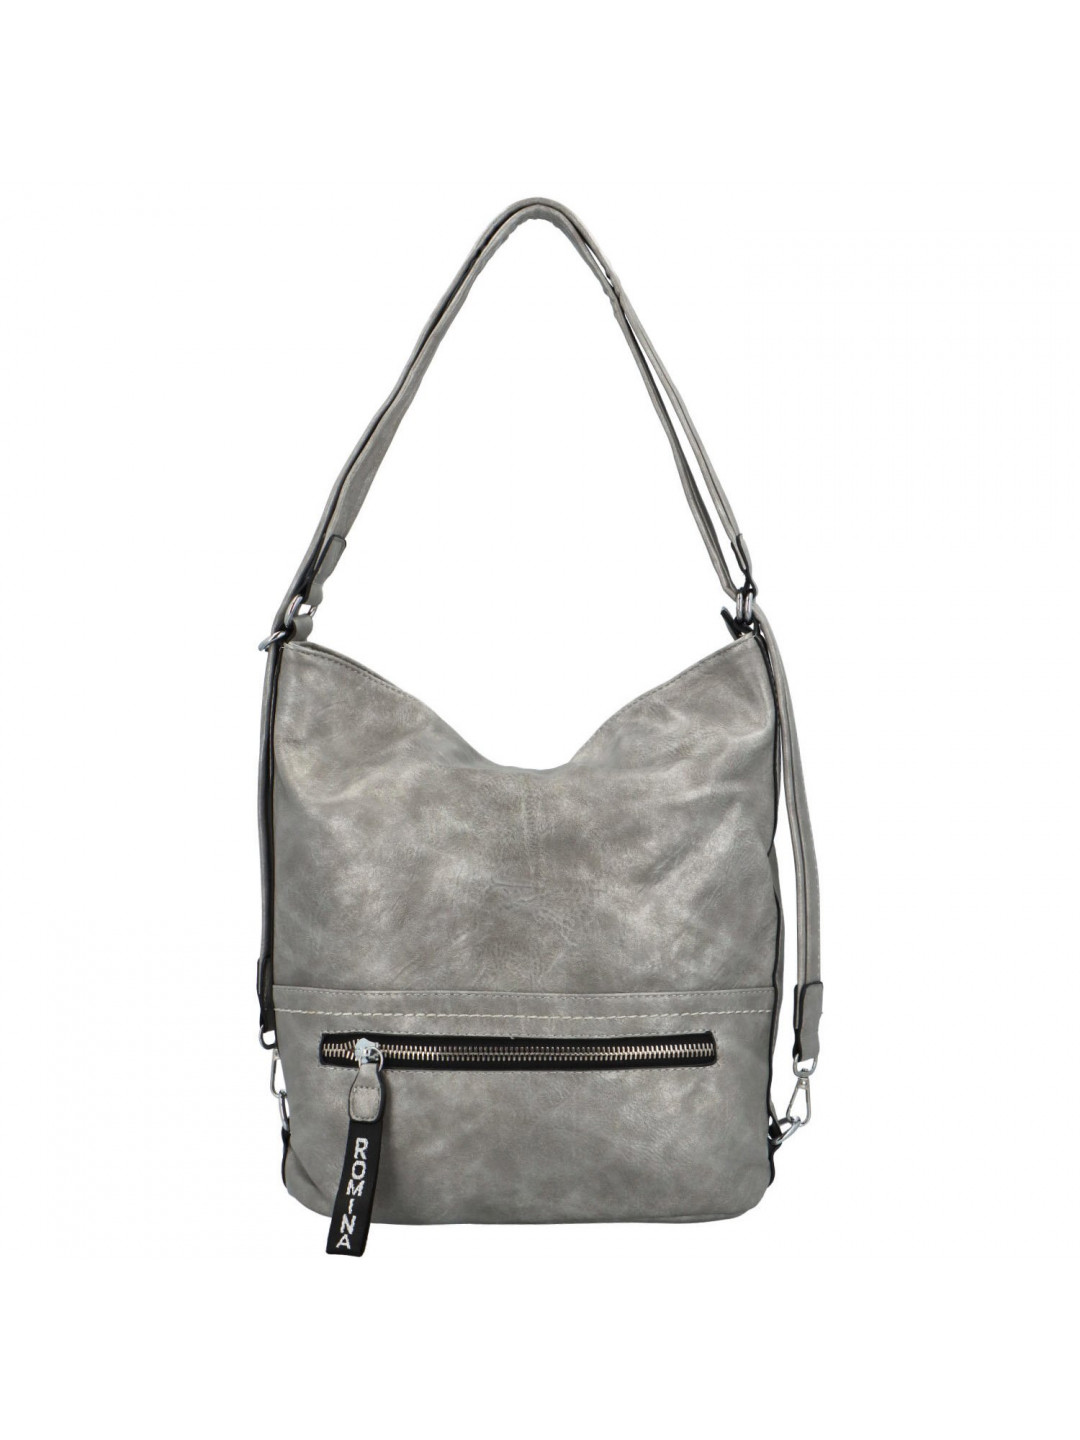 Stylový dámský kabelko-batoh Trittia stříbrná